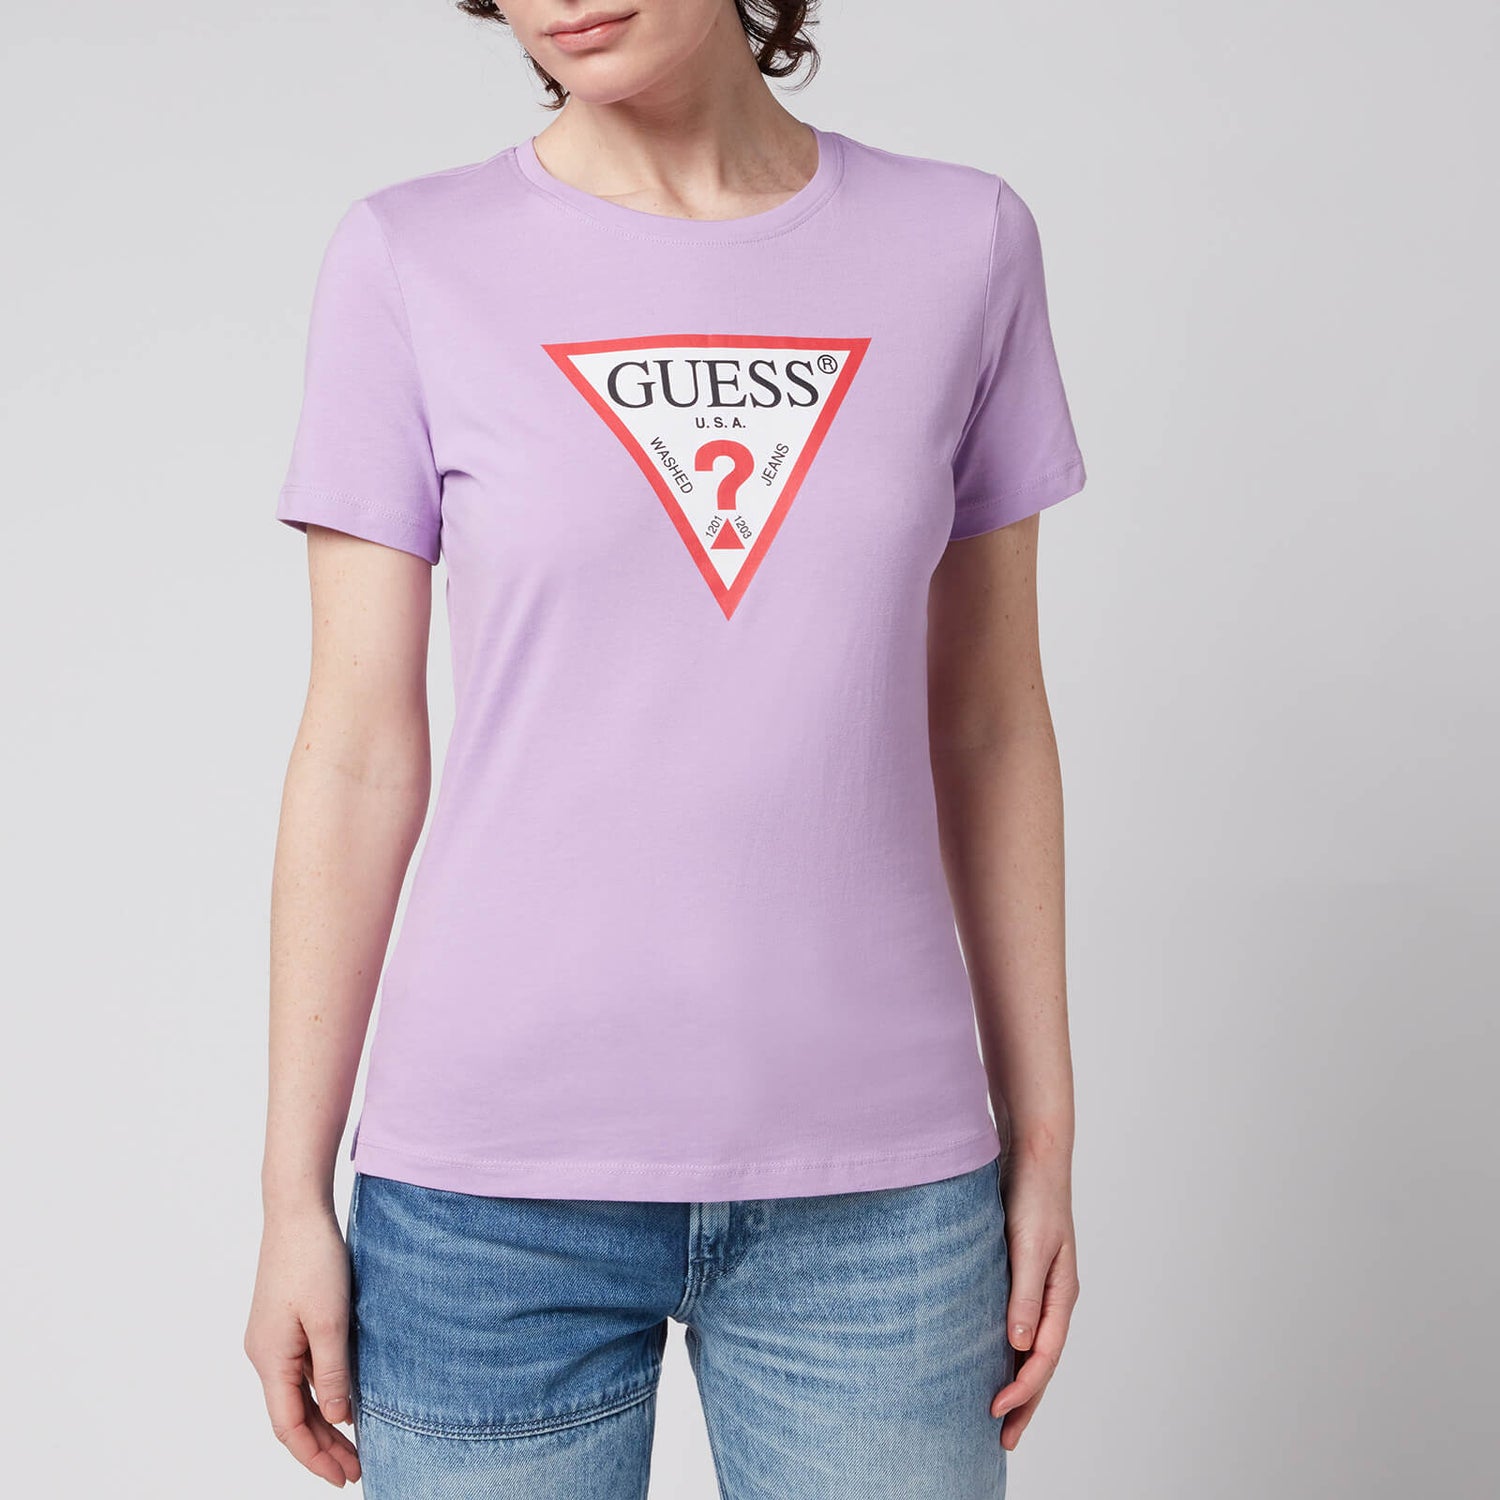 Guess Women's Original T-Shirt - Fresh Lilac - XS